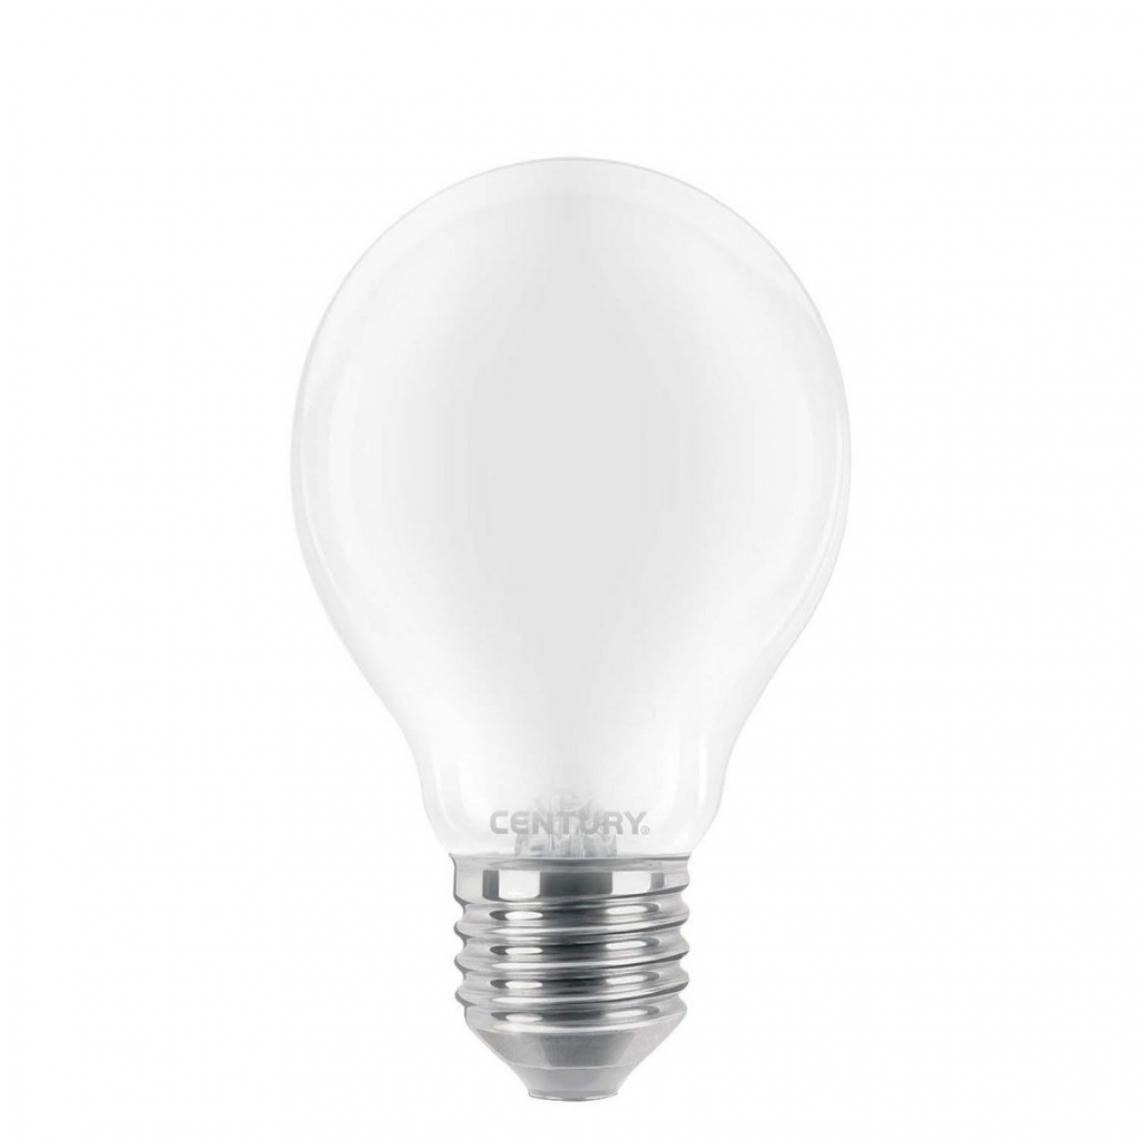 Alpexe - Ampoule LED E27 10 W 1521 lm 6000 K - Ampoules LED